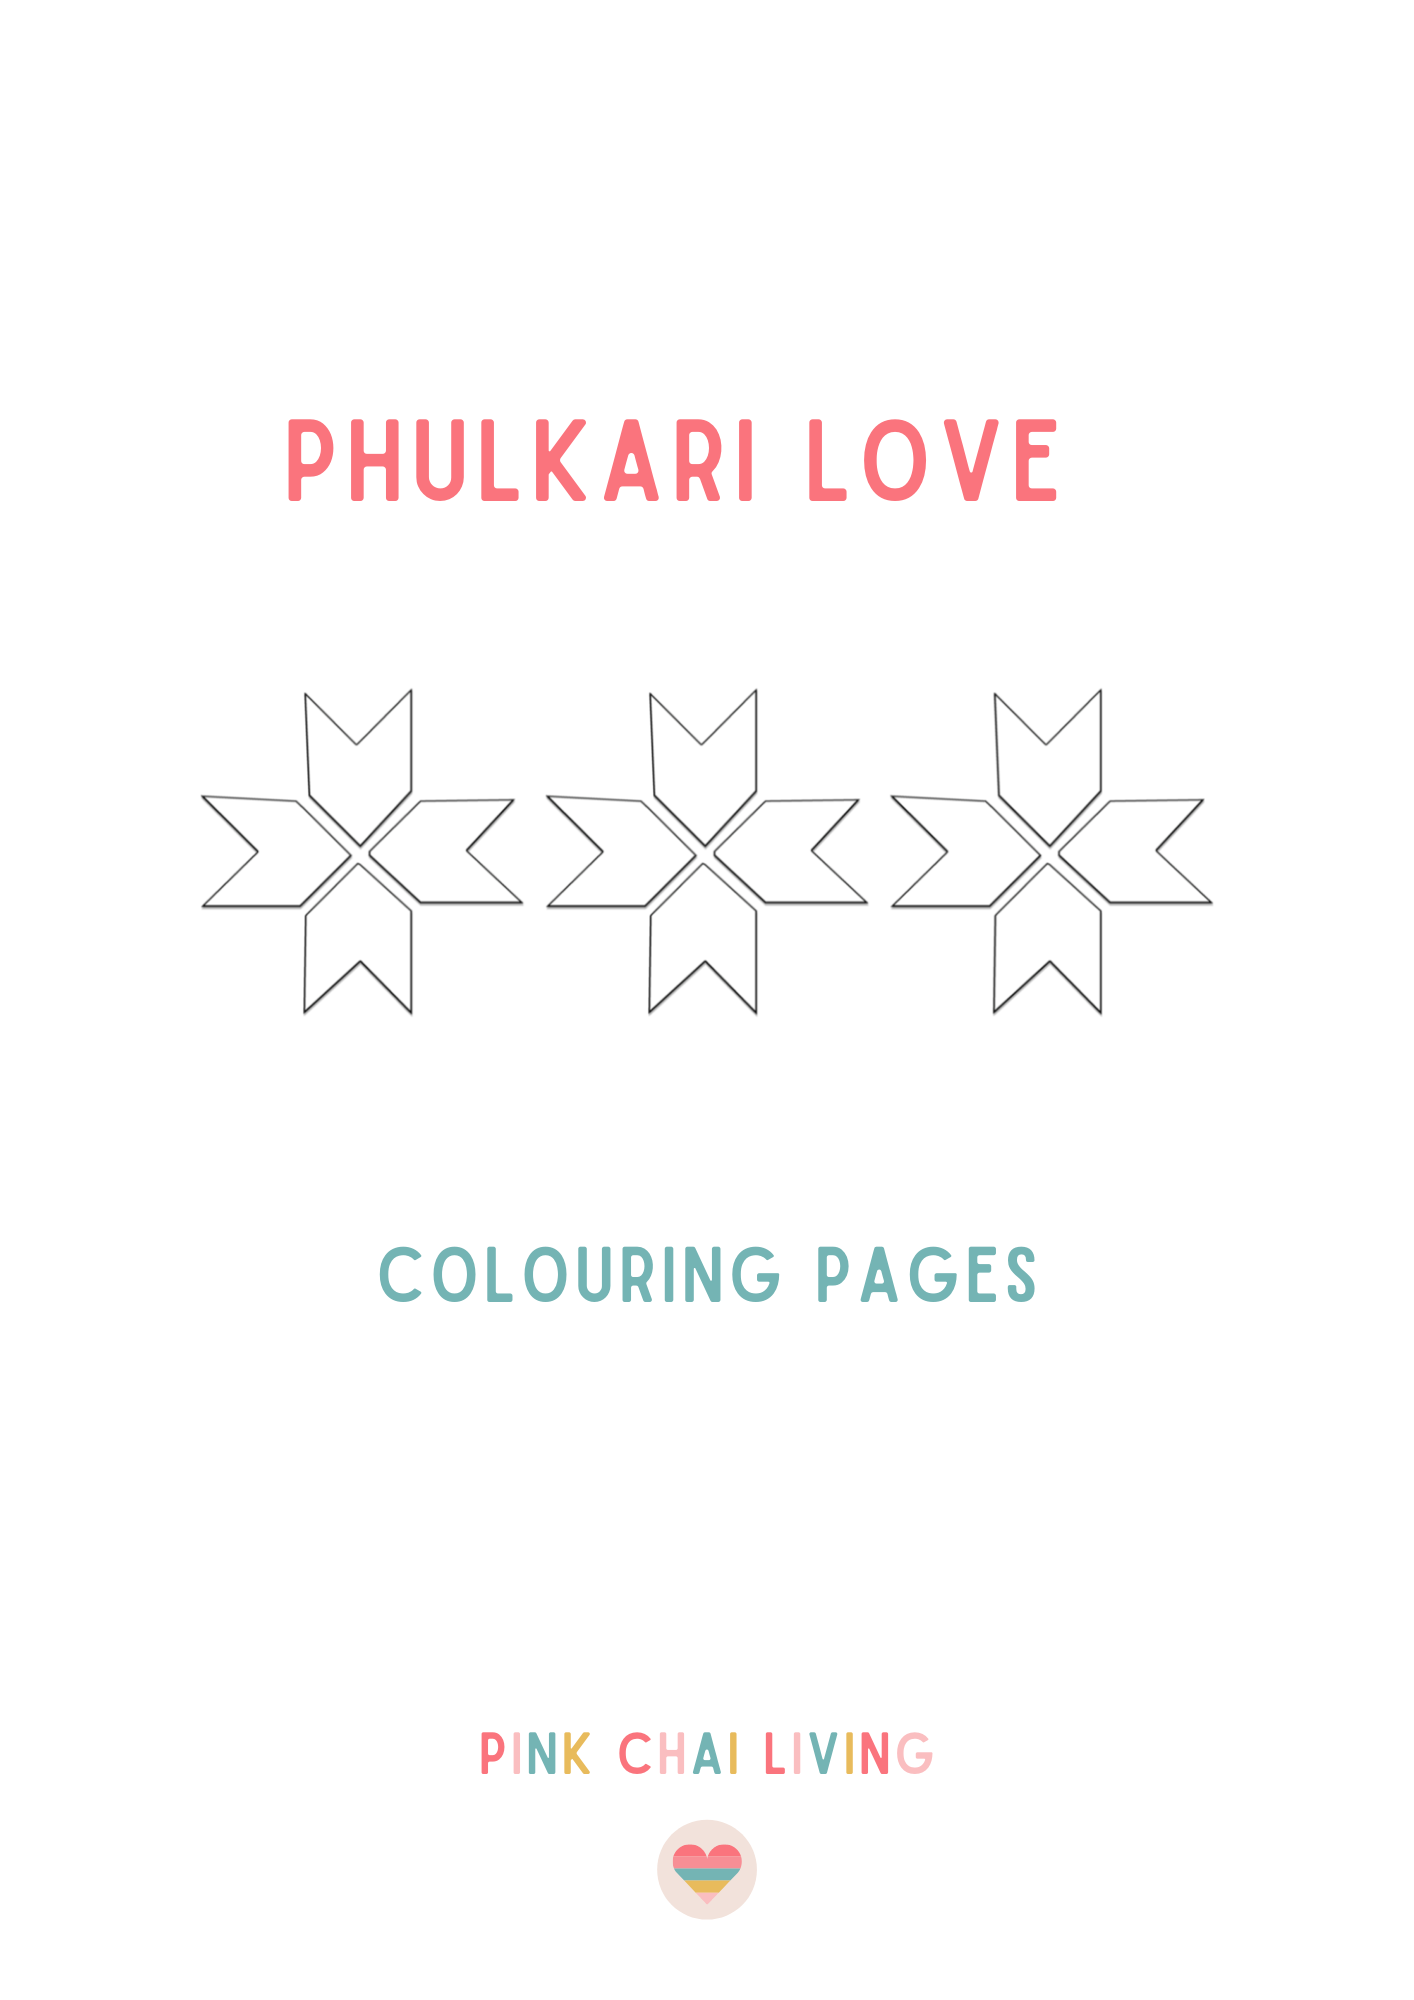 Phulkari – Heritage of Punjab - RumanaJ designs